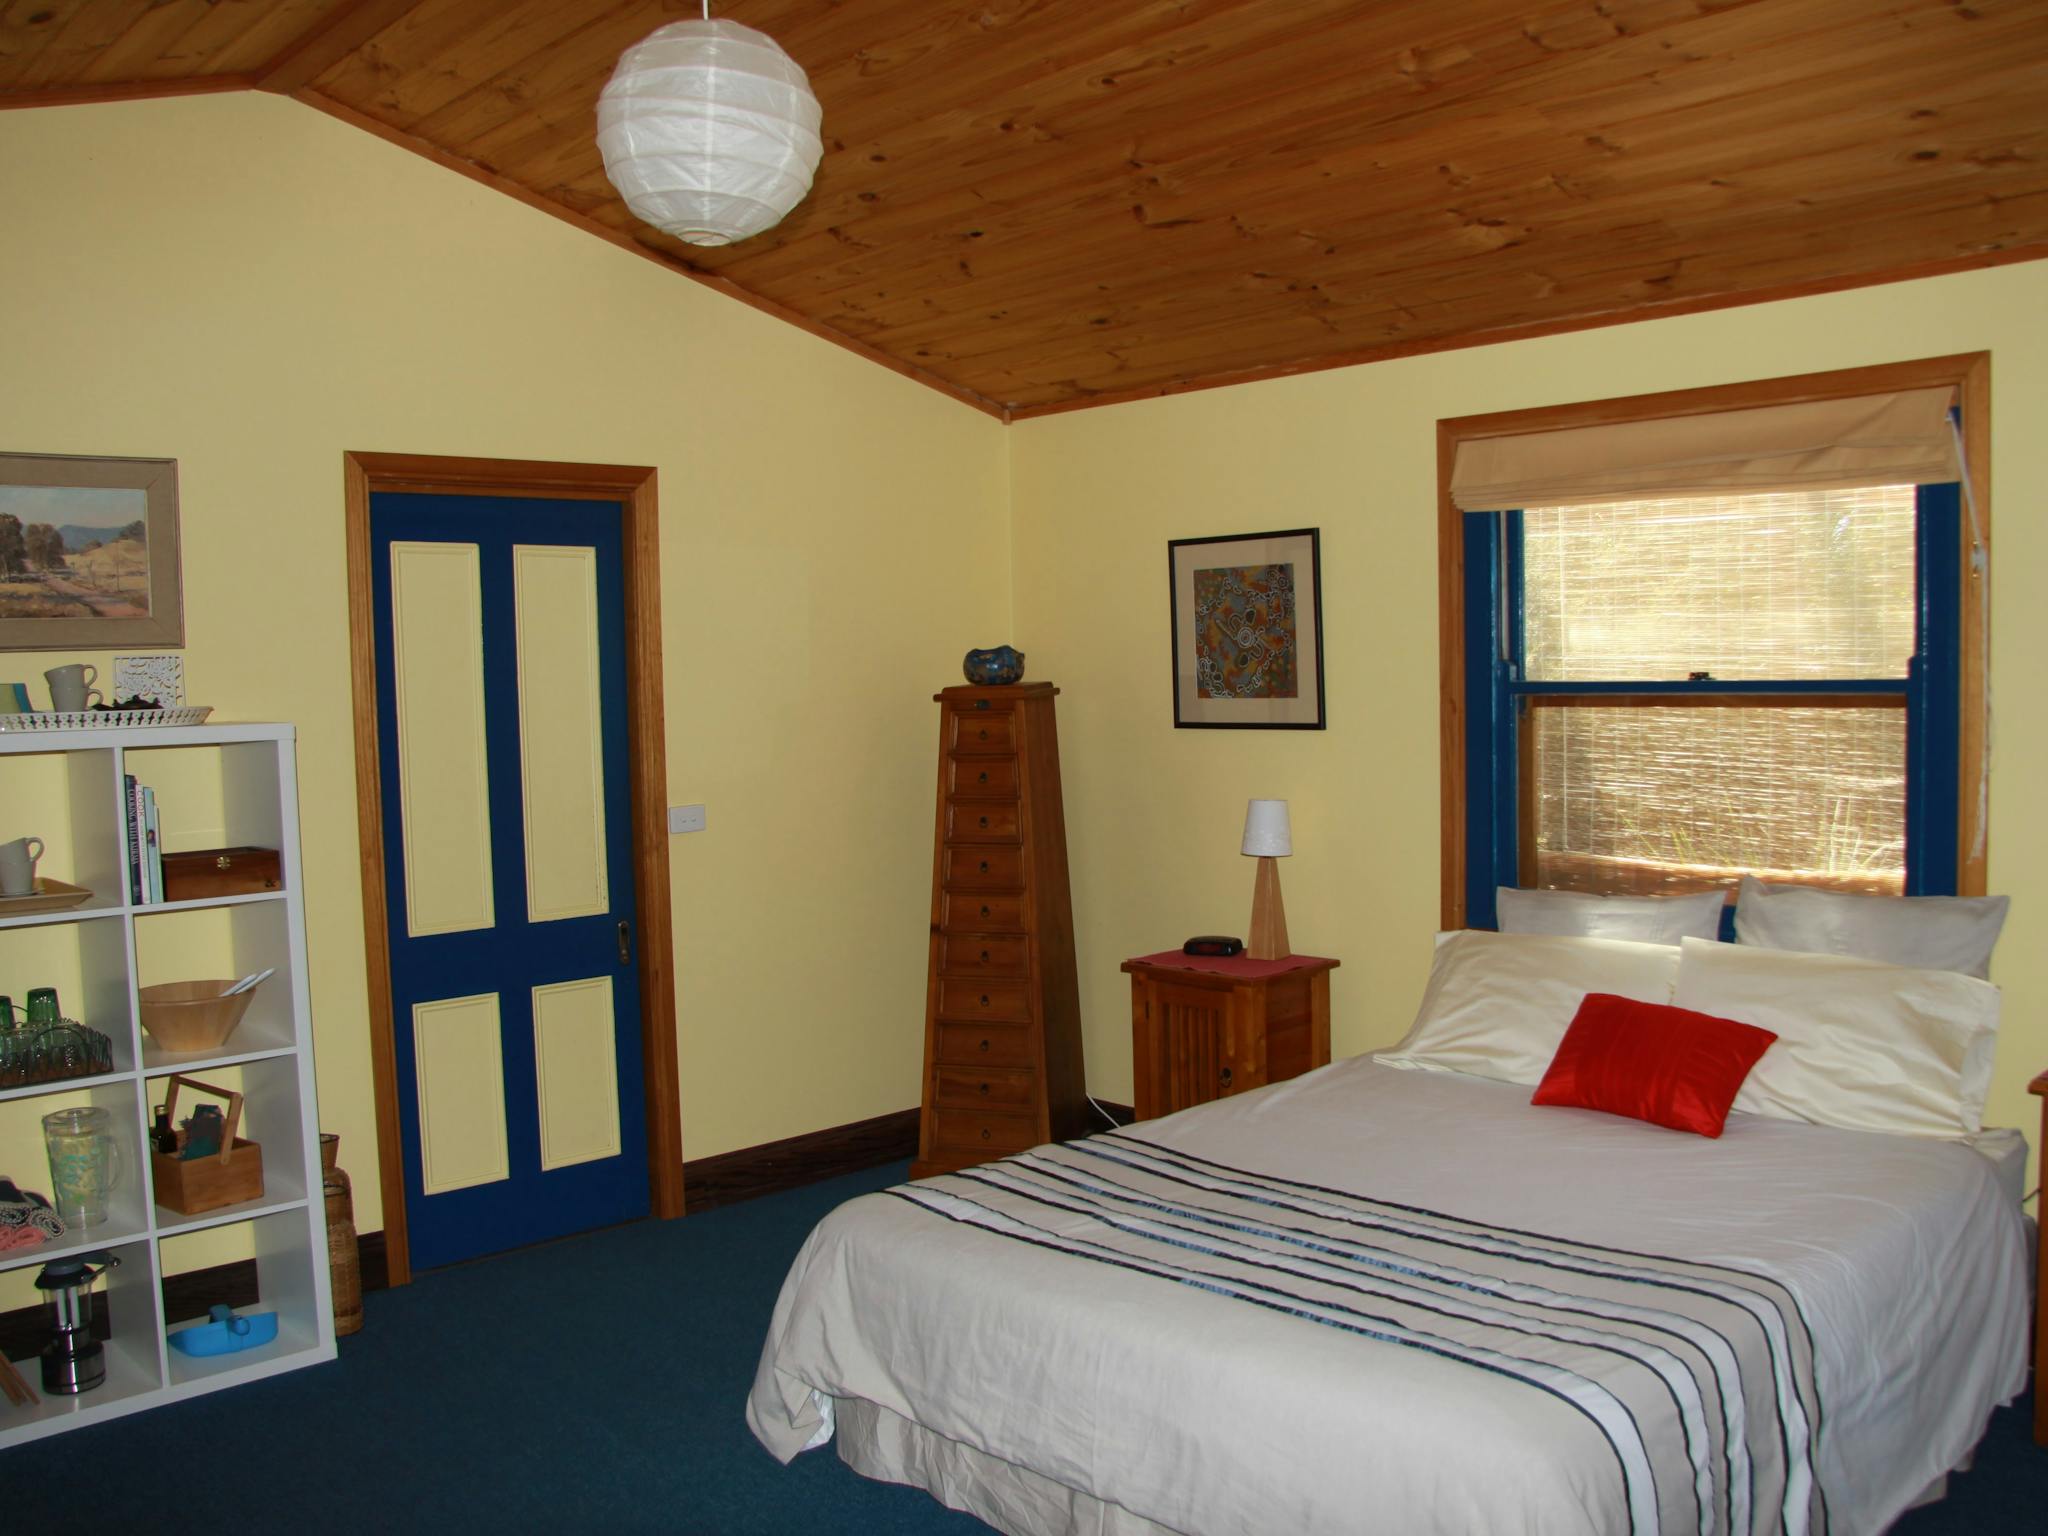 Bedroom showing queensized bed and sliding door to ensuite